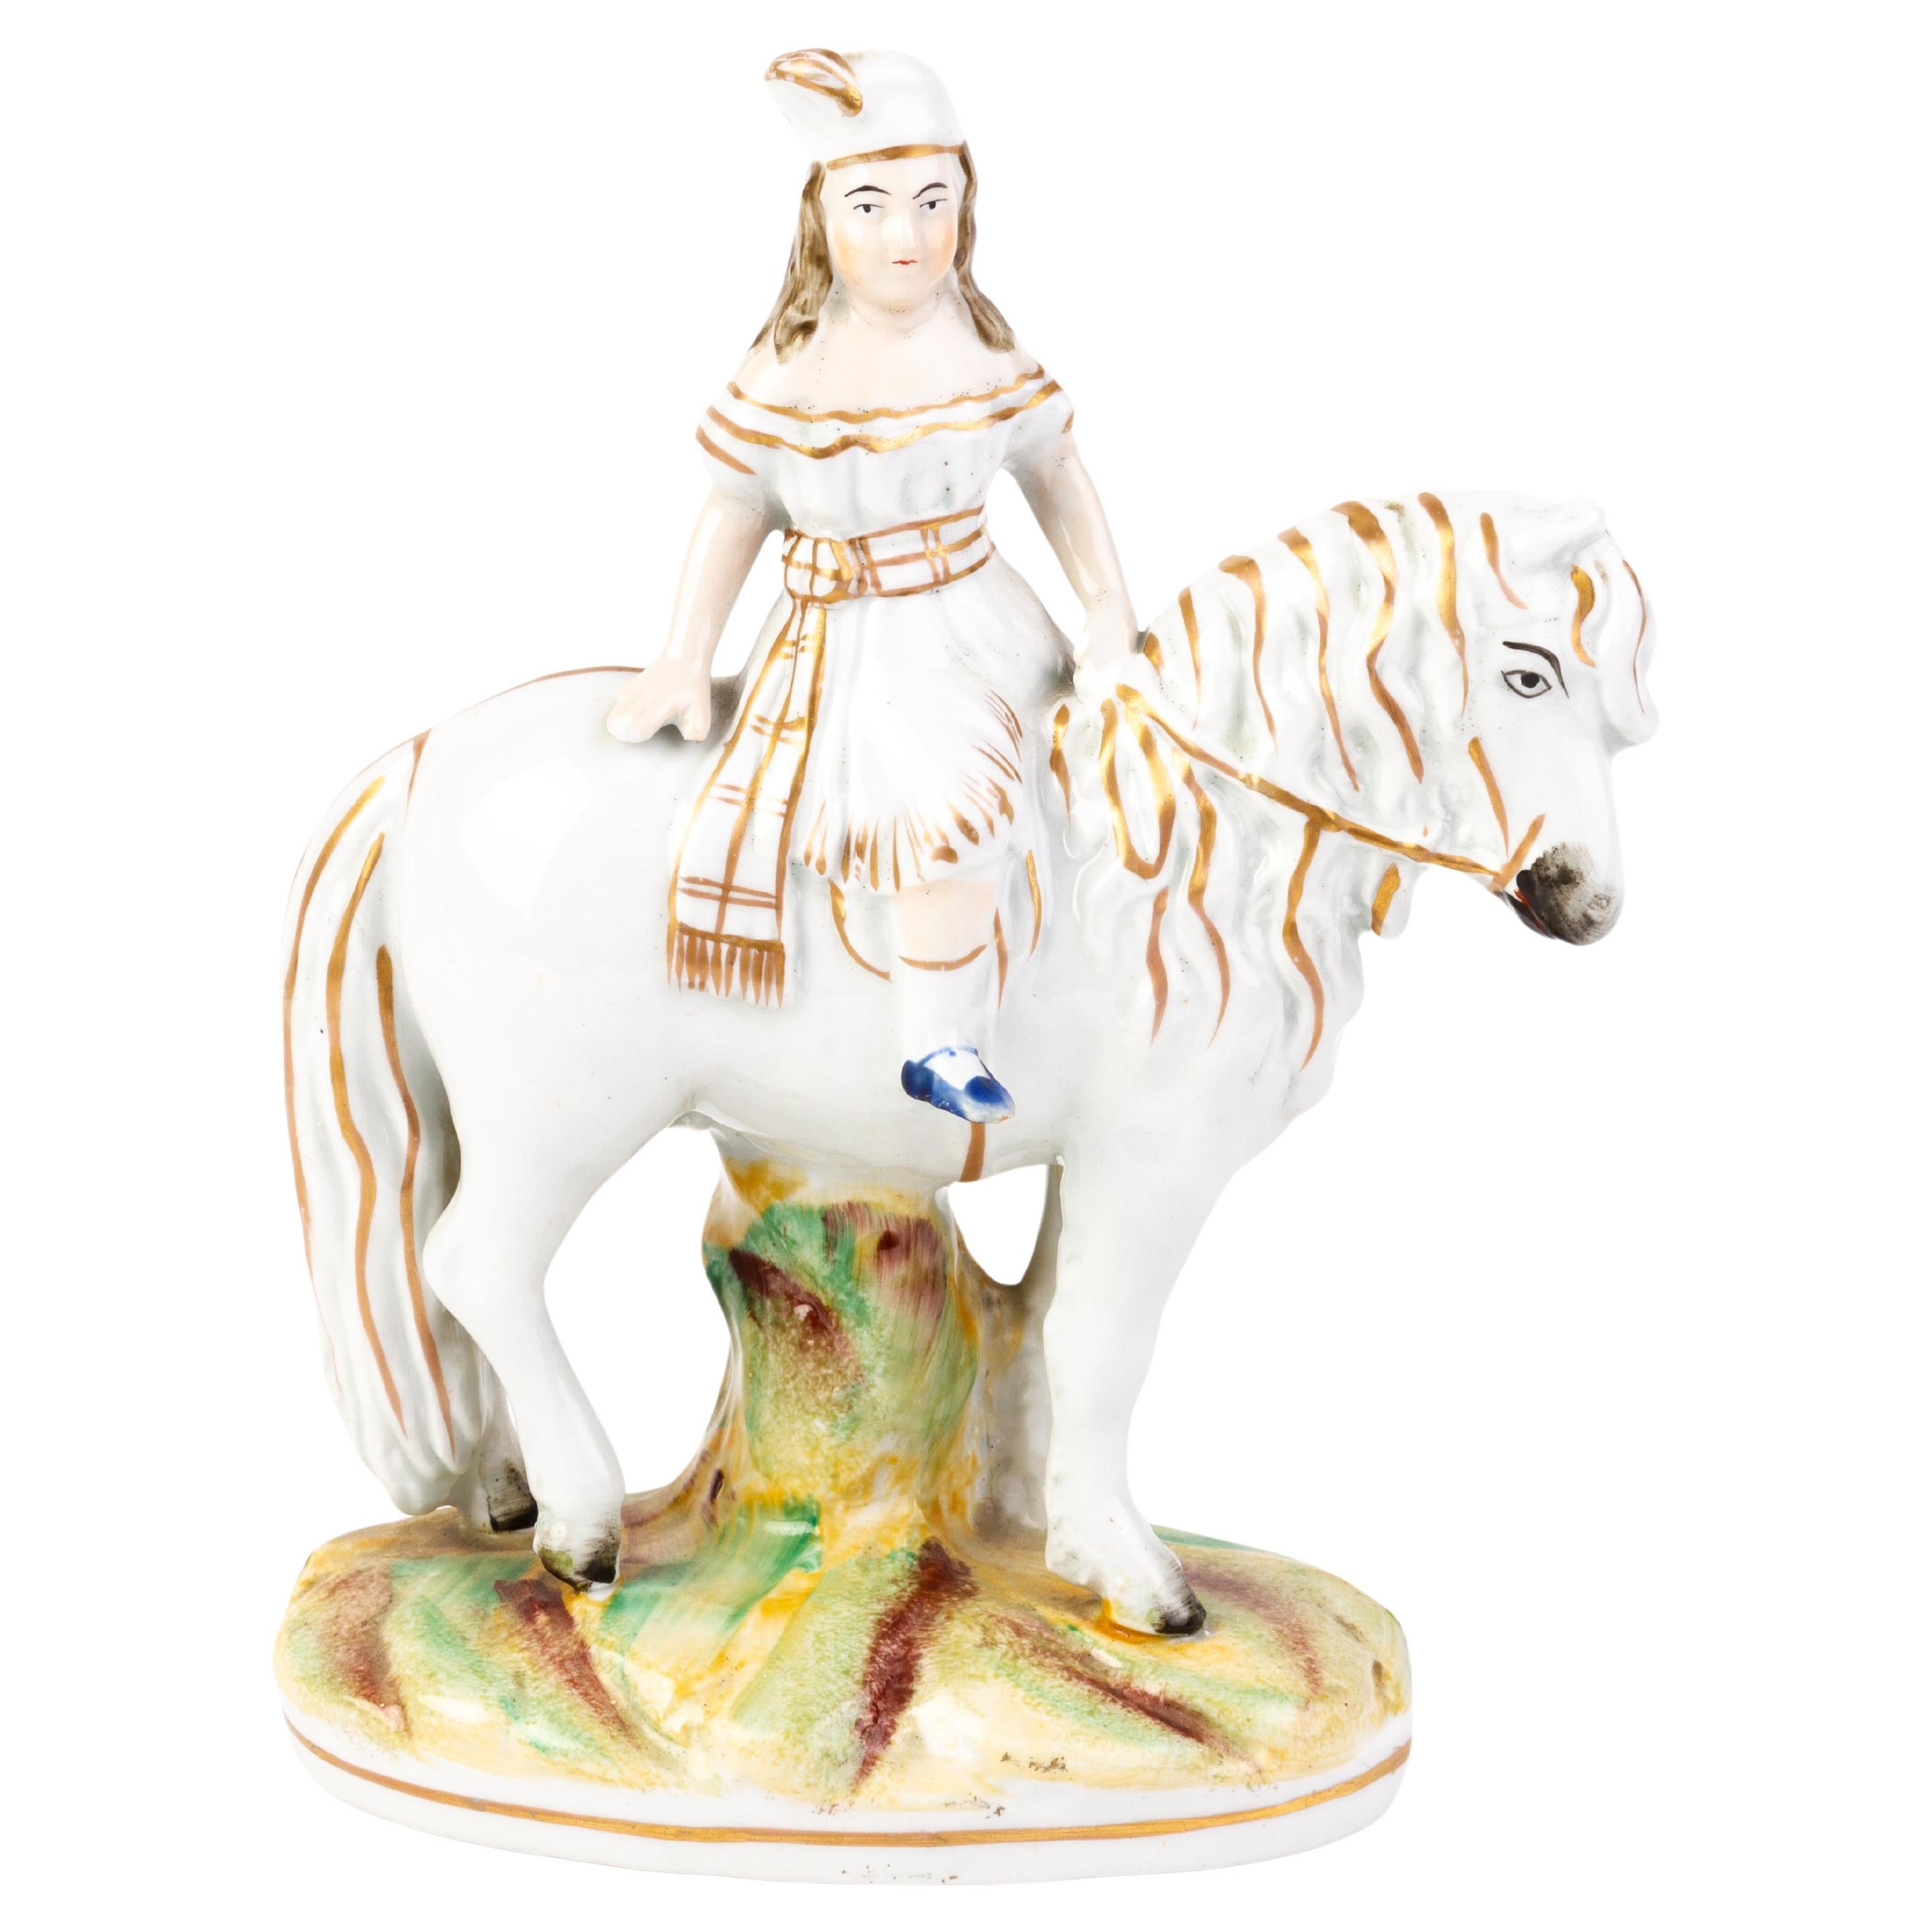 Figure de cheval en poterie du Staffordshire 19ème siècle 